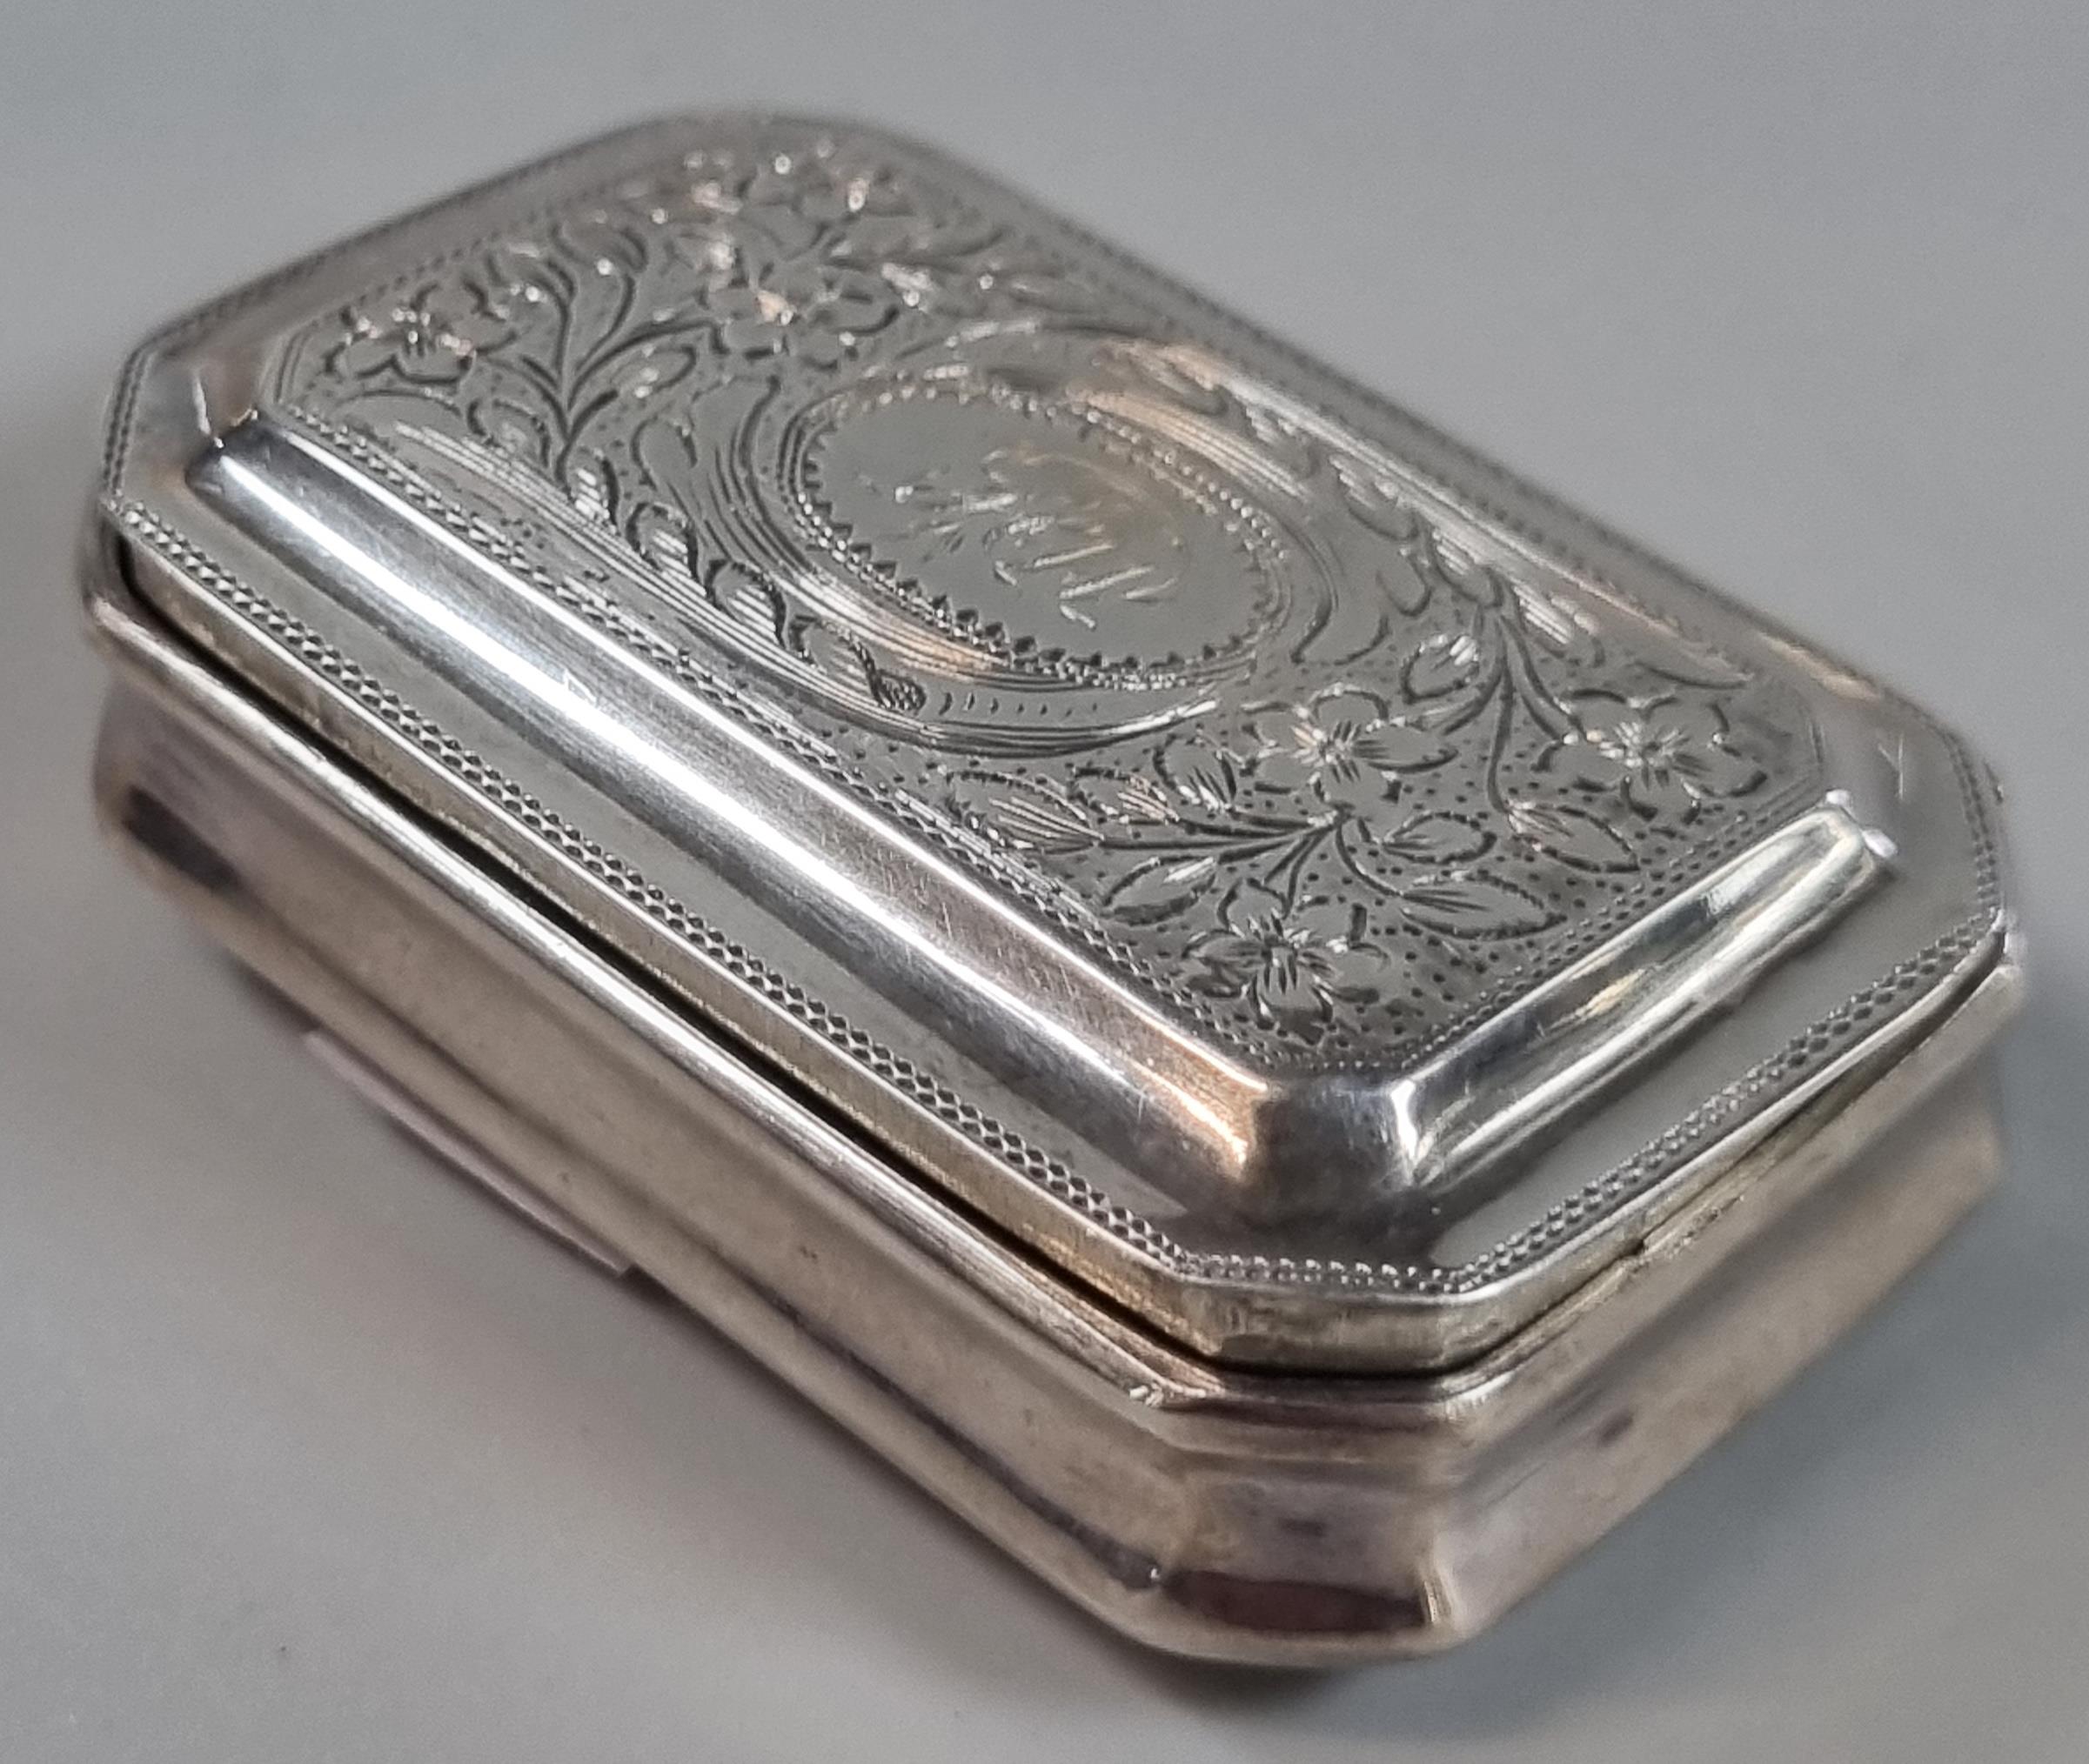 George III silver snuff box, Birmingham hallmarks 'For John Betridge, 1818'. 0.6 troy oz approx.